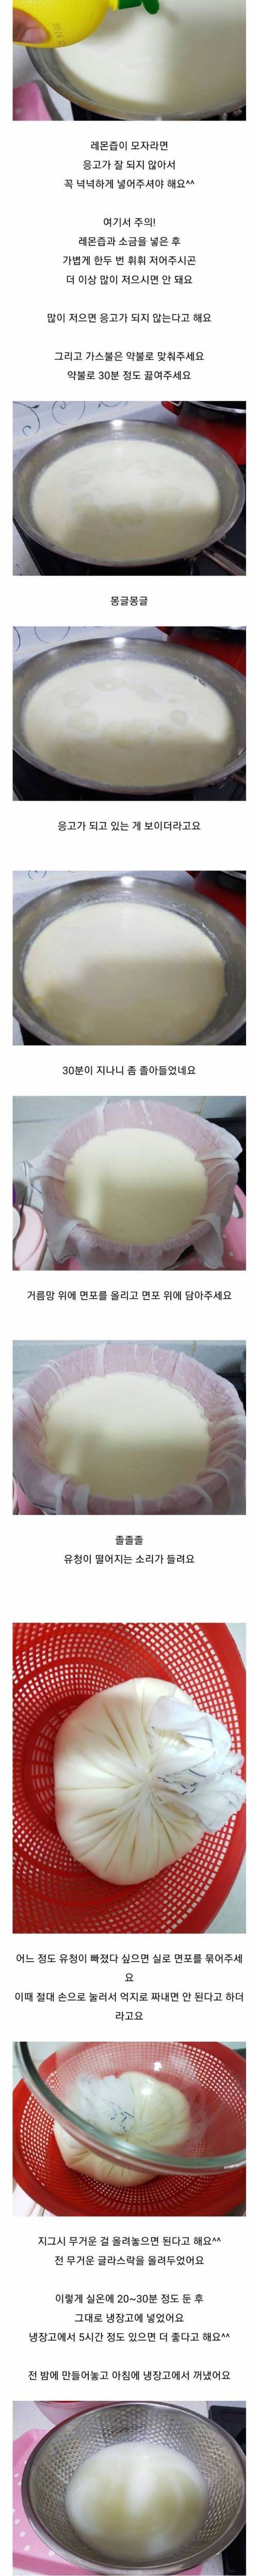 모유로 치즈만든 블로거.jpg